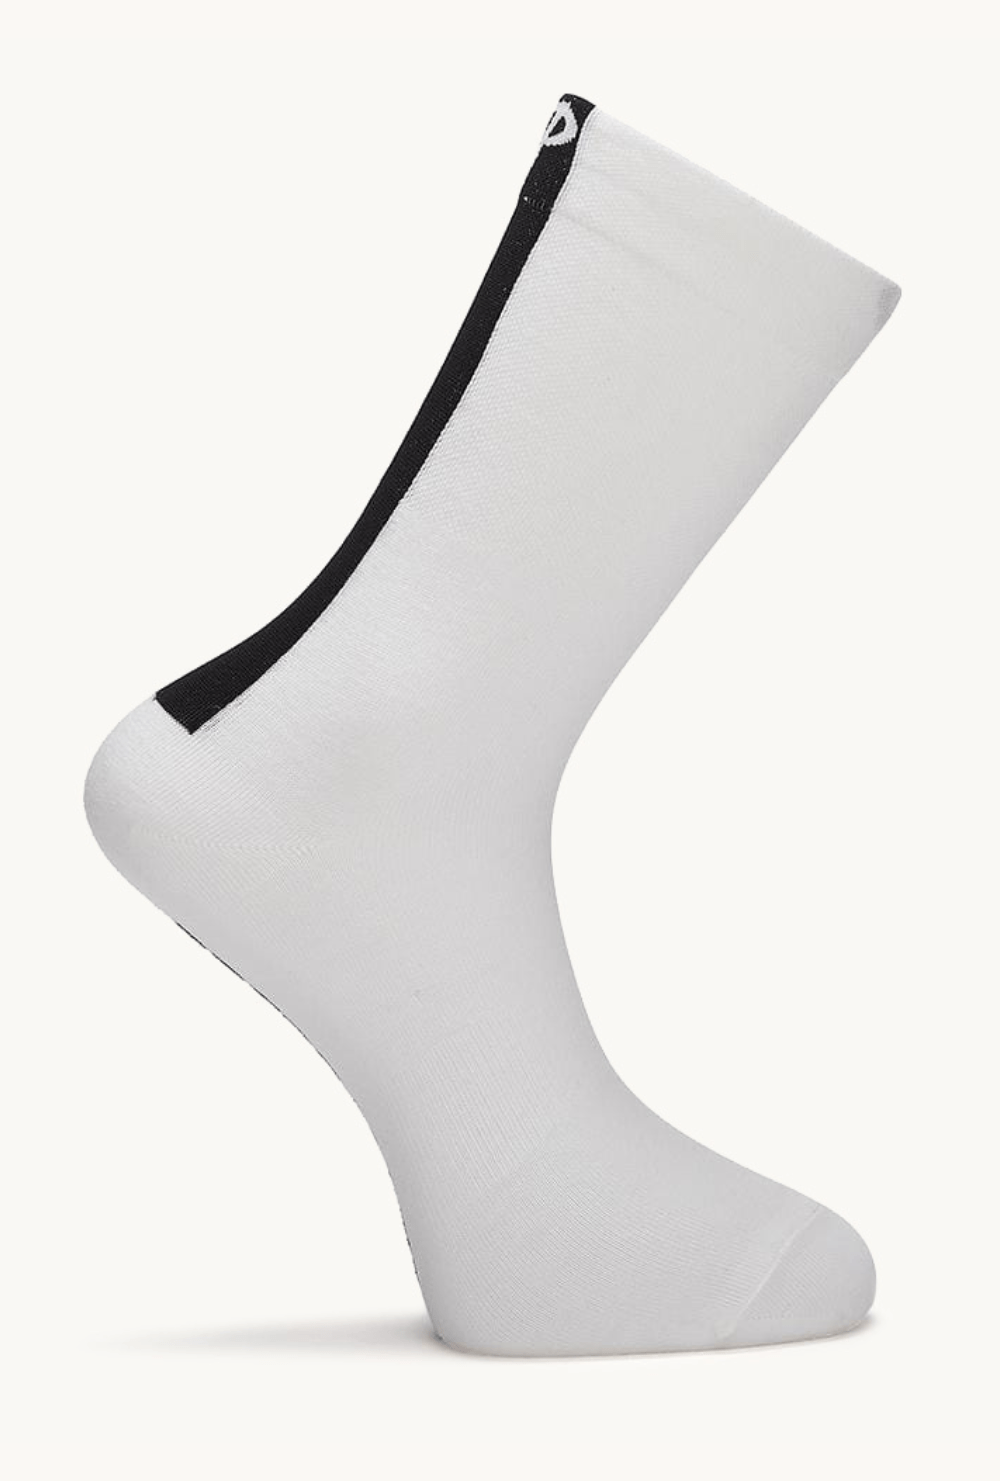 Pcs  Press Hard Here - Socks White  Large / X-large / White